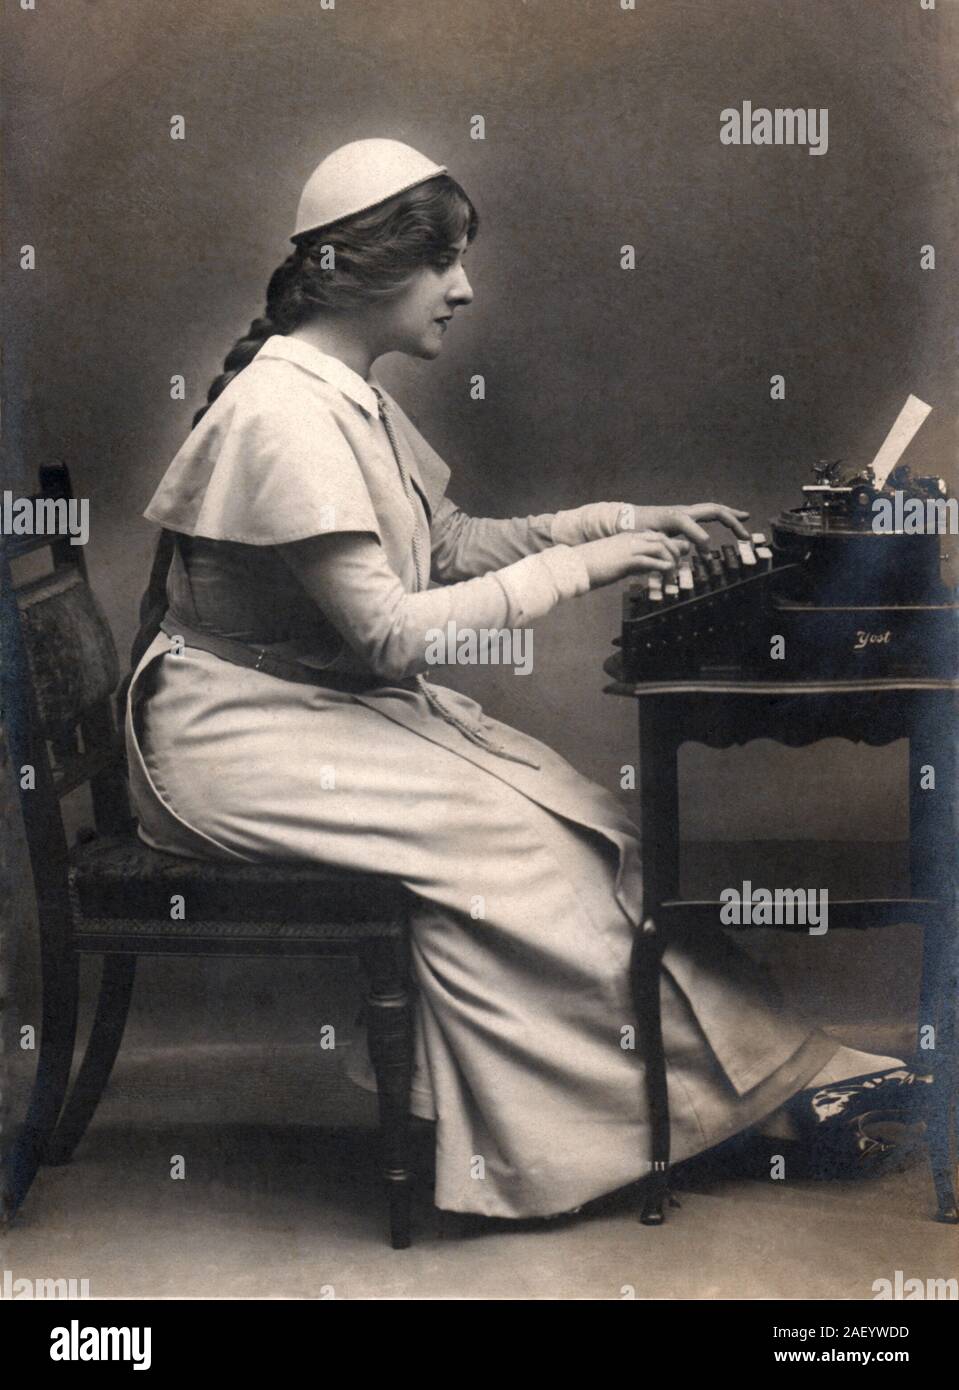 Sekretär ca. 1907 mit einem Yost Schreibmaschine aus den späten 1800er Jahren, Vintage real photographische Postkarte (RPC). Stockfoto